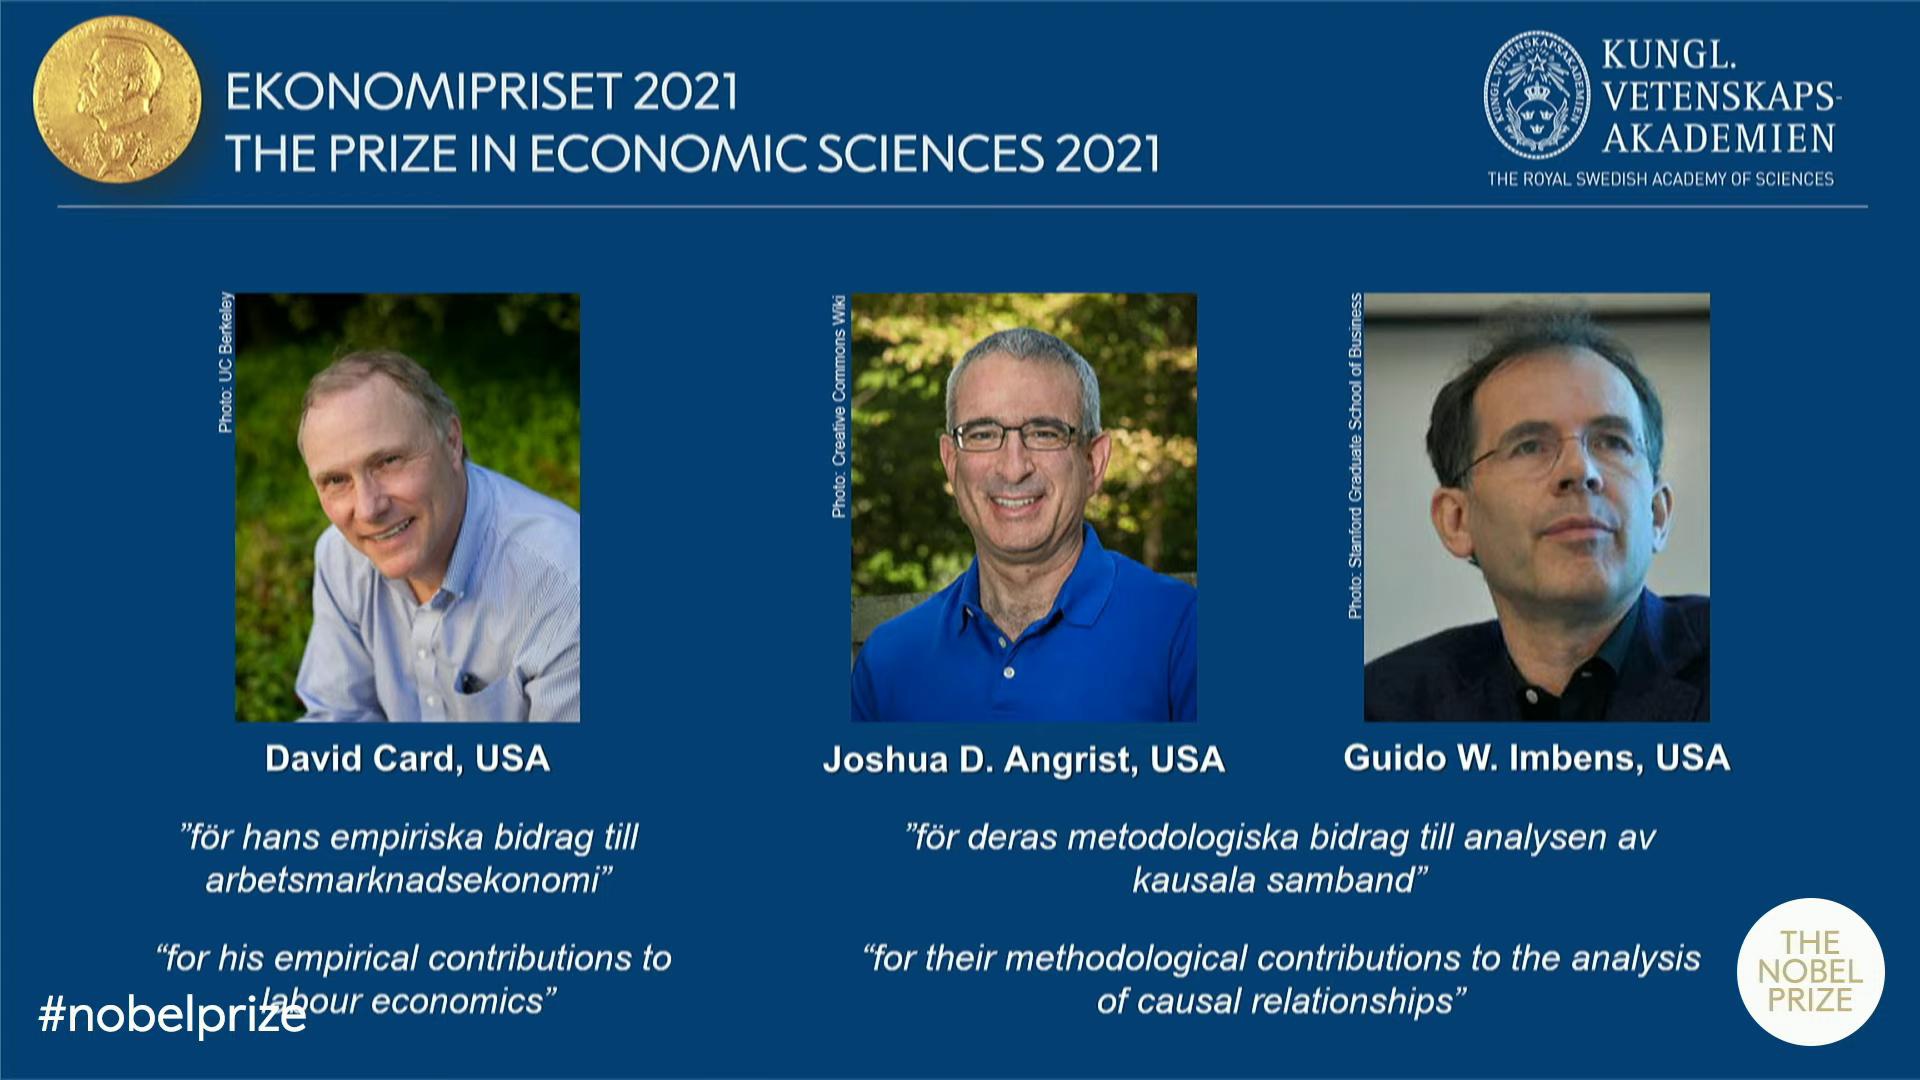 ViMoney - 3 nhà kinh tế học người Mỹ và Canada đạt giải Nobel kinh tế năm 2021